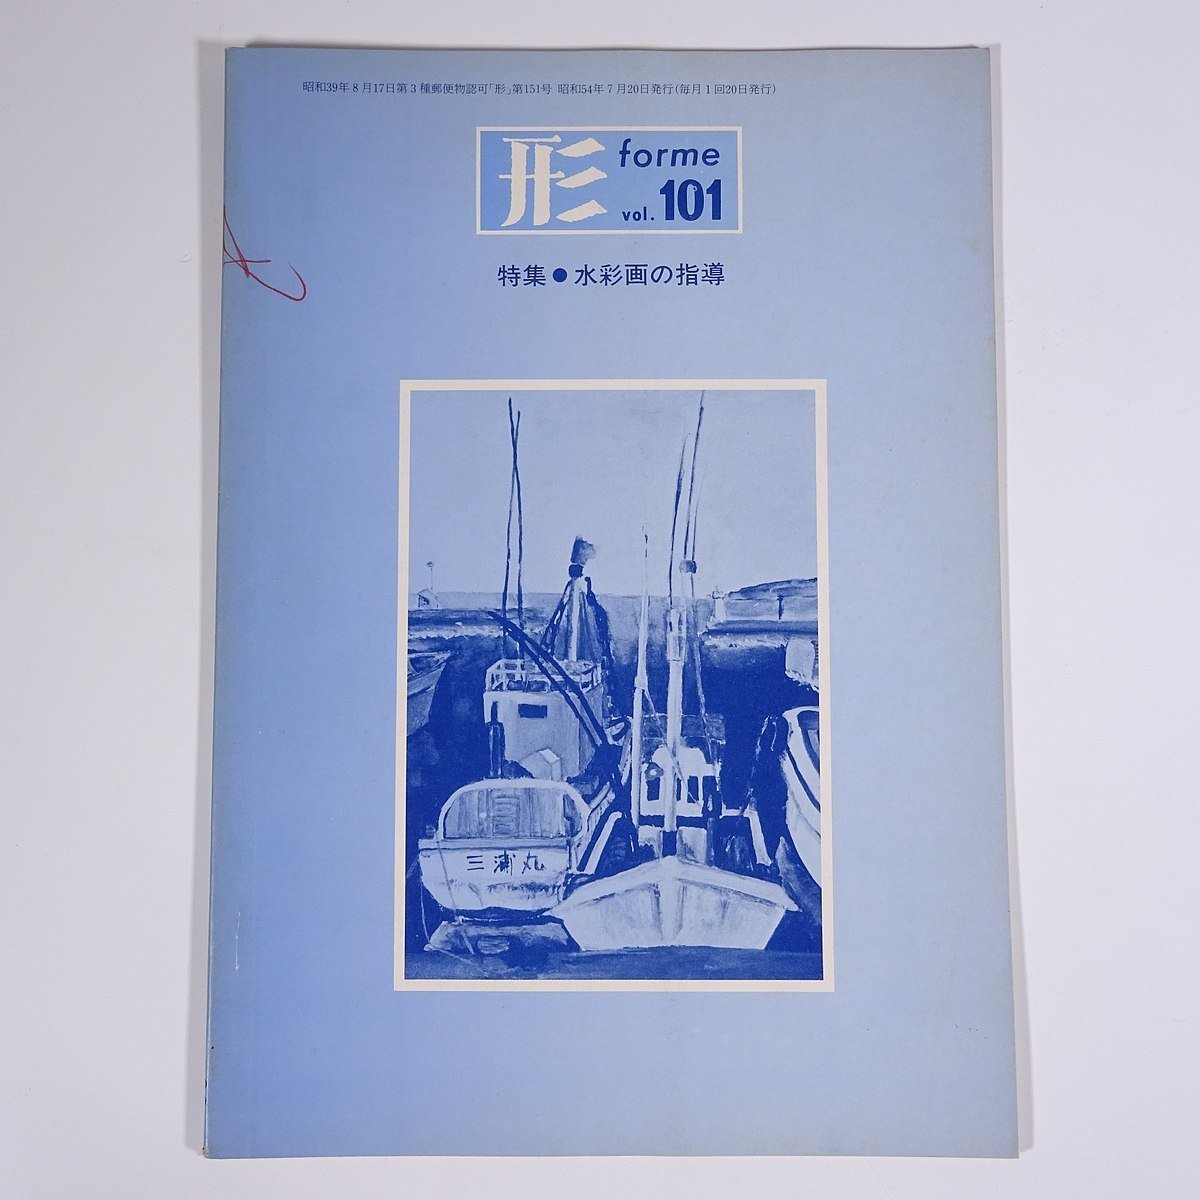 Formulaire Vol.101 1979/7 Nippon Bunkyo Publishing Co., Ltd. Magazine Éducation Art Beaux-arts Peinture Artisanat Artisanat Particularité : enseignement de la peinture à l'aquarelle, etc., revue, art, Divertissement, Art général